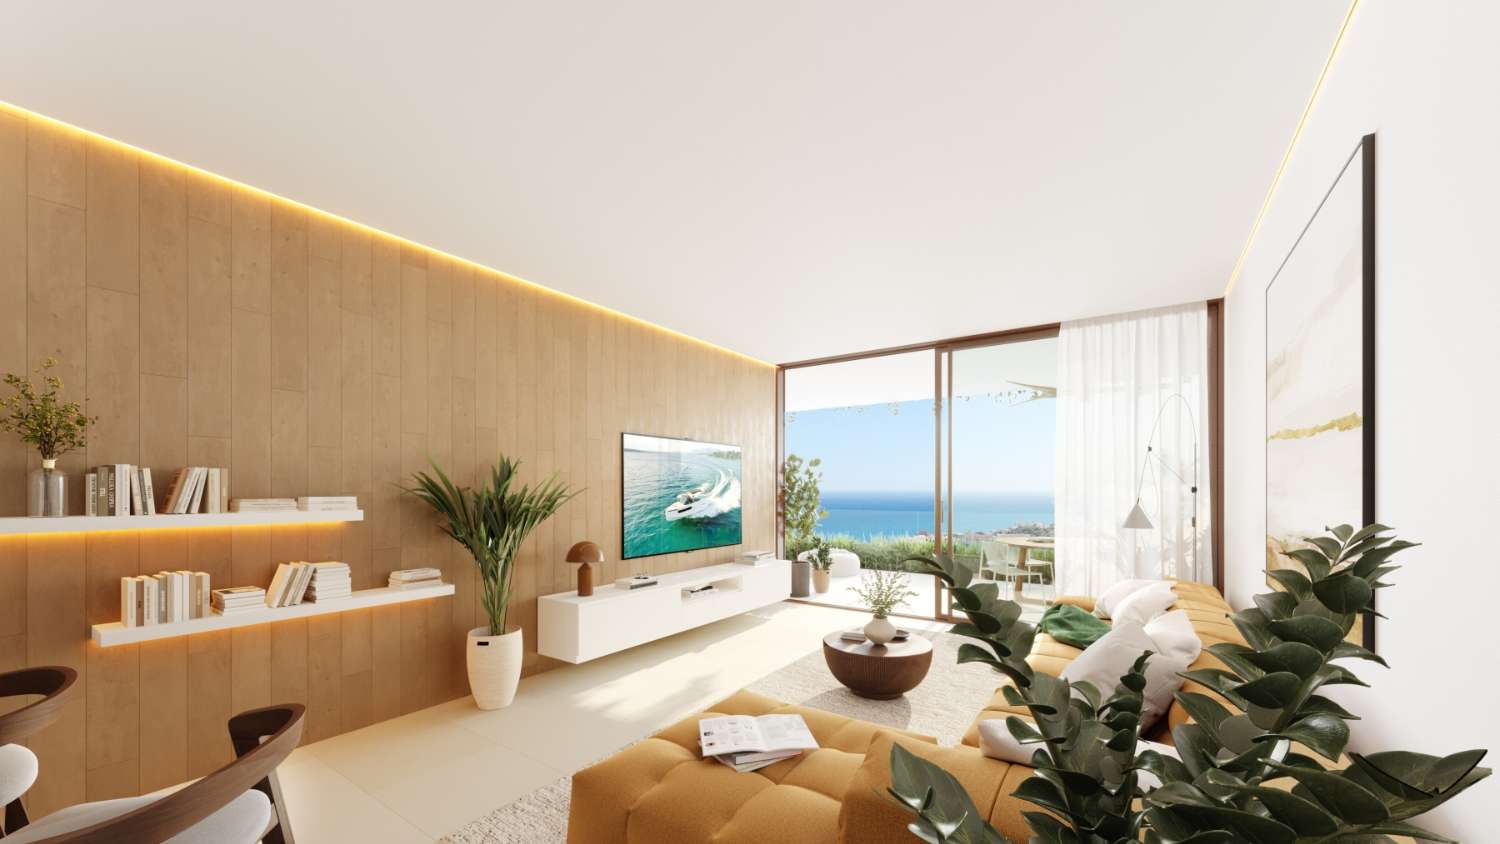 Appartamenti moderni con vista panoramica sul mare nella prestigiosa zona di Higuerón, Benalmádena